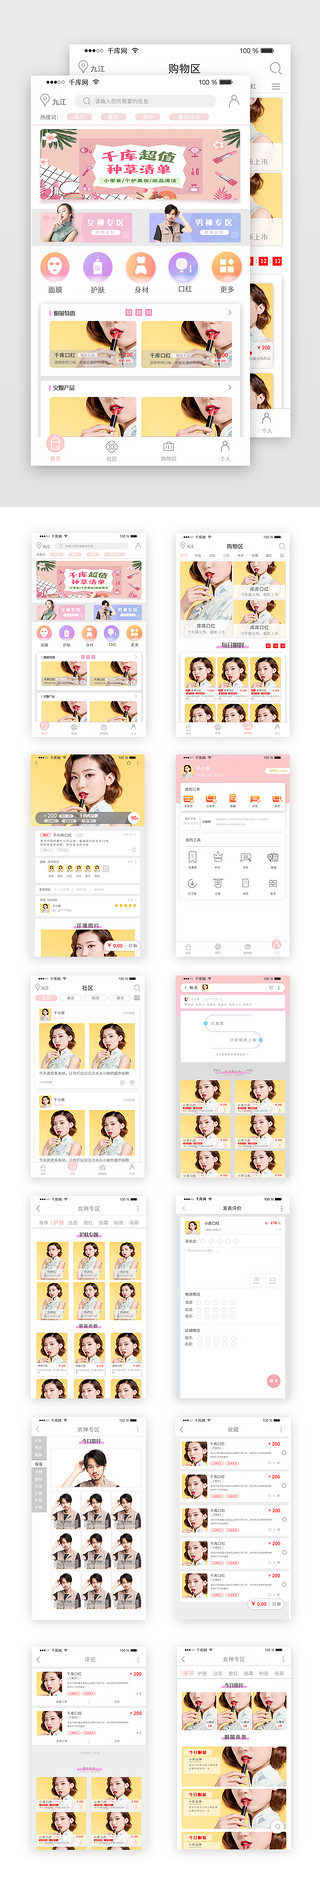 美妆UI设计素材_网购电商美妆换妆品APP页面套图